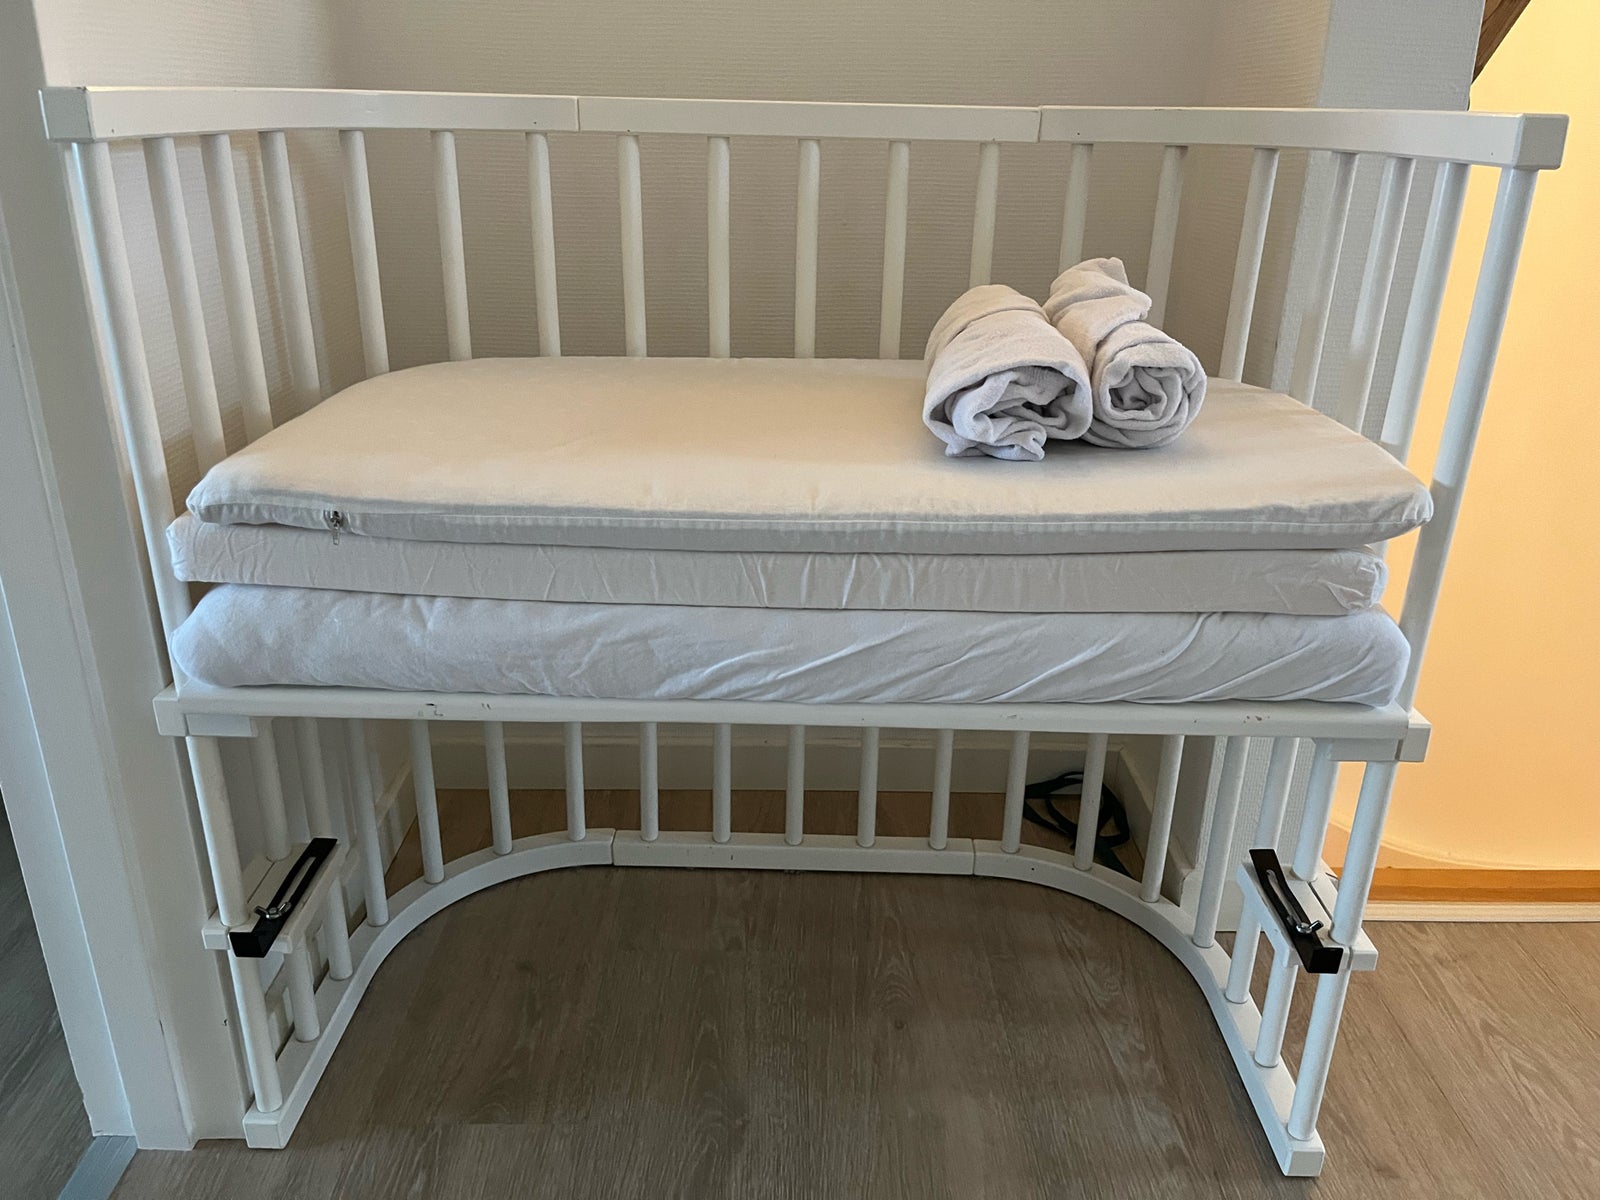 Babyseng, Bedside crib, b: 46 l: 88